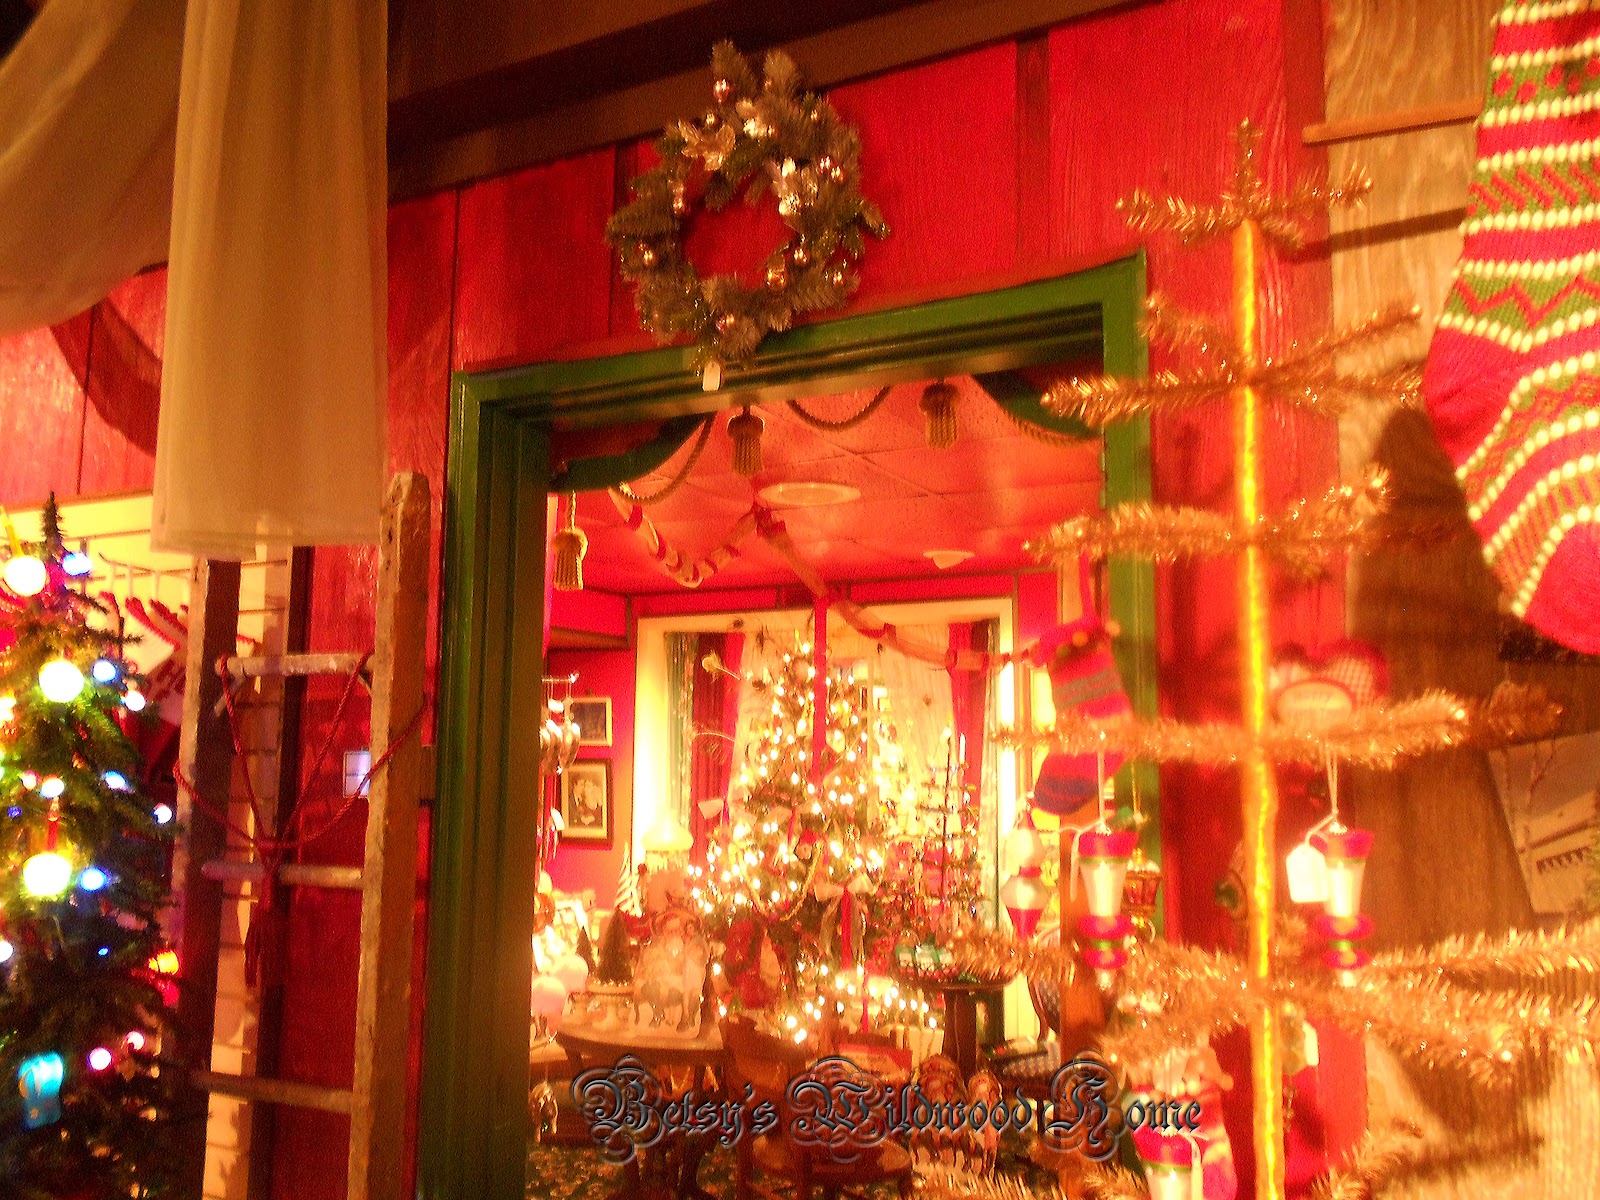 Wildwood Christmas: Christmas shop pictures